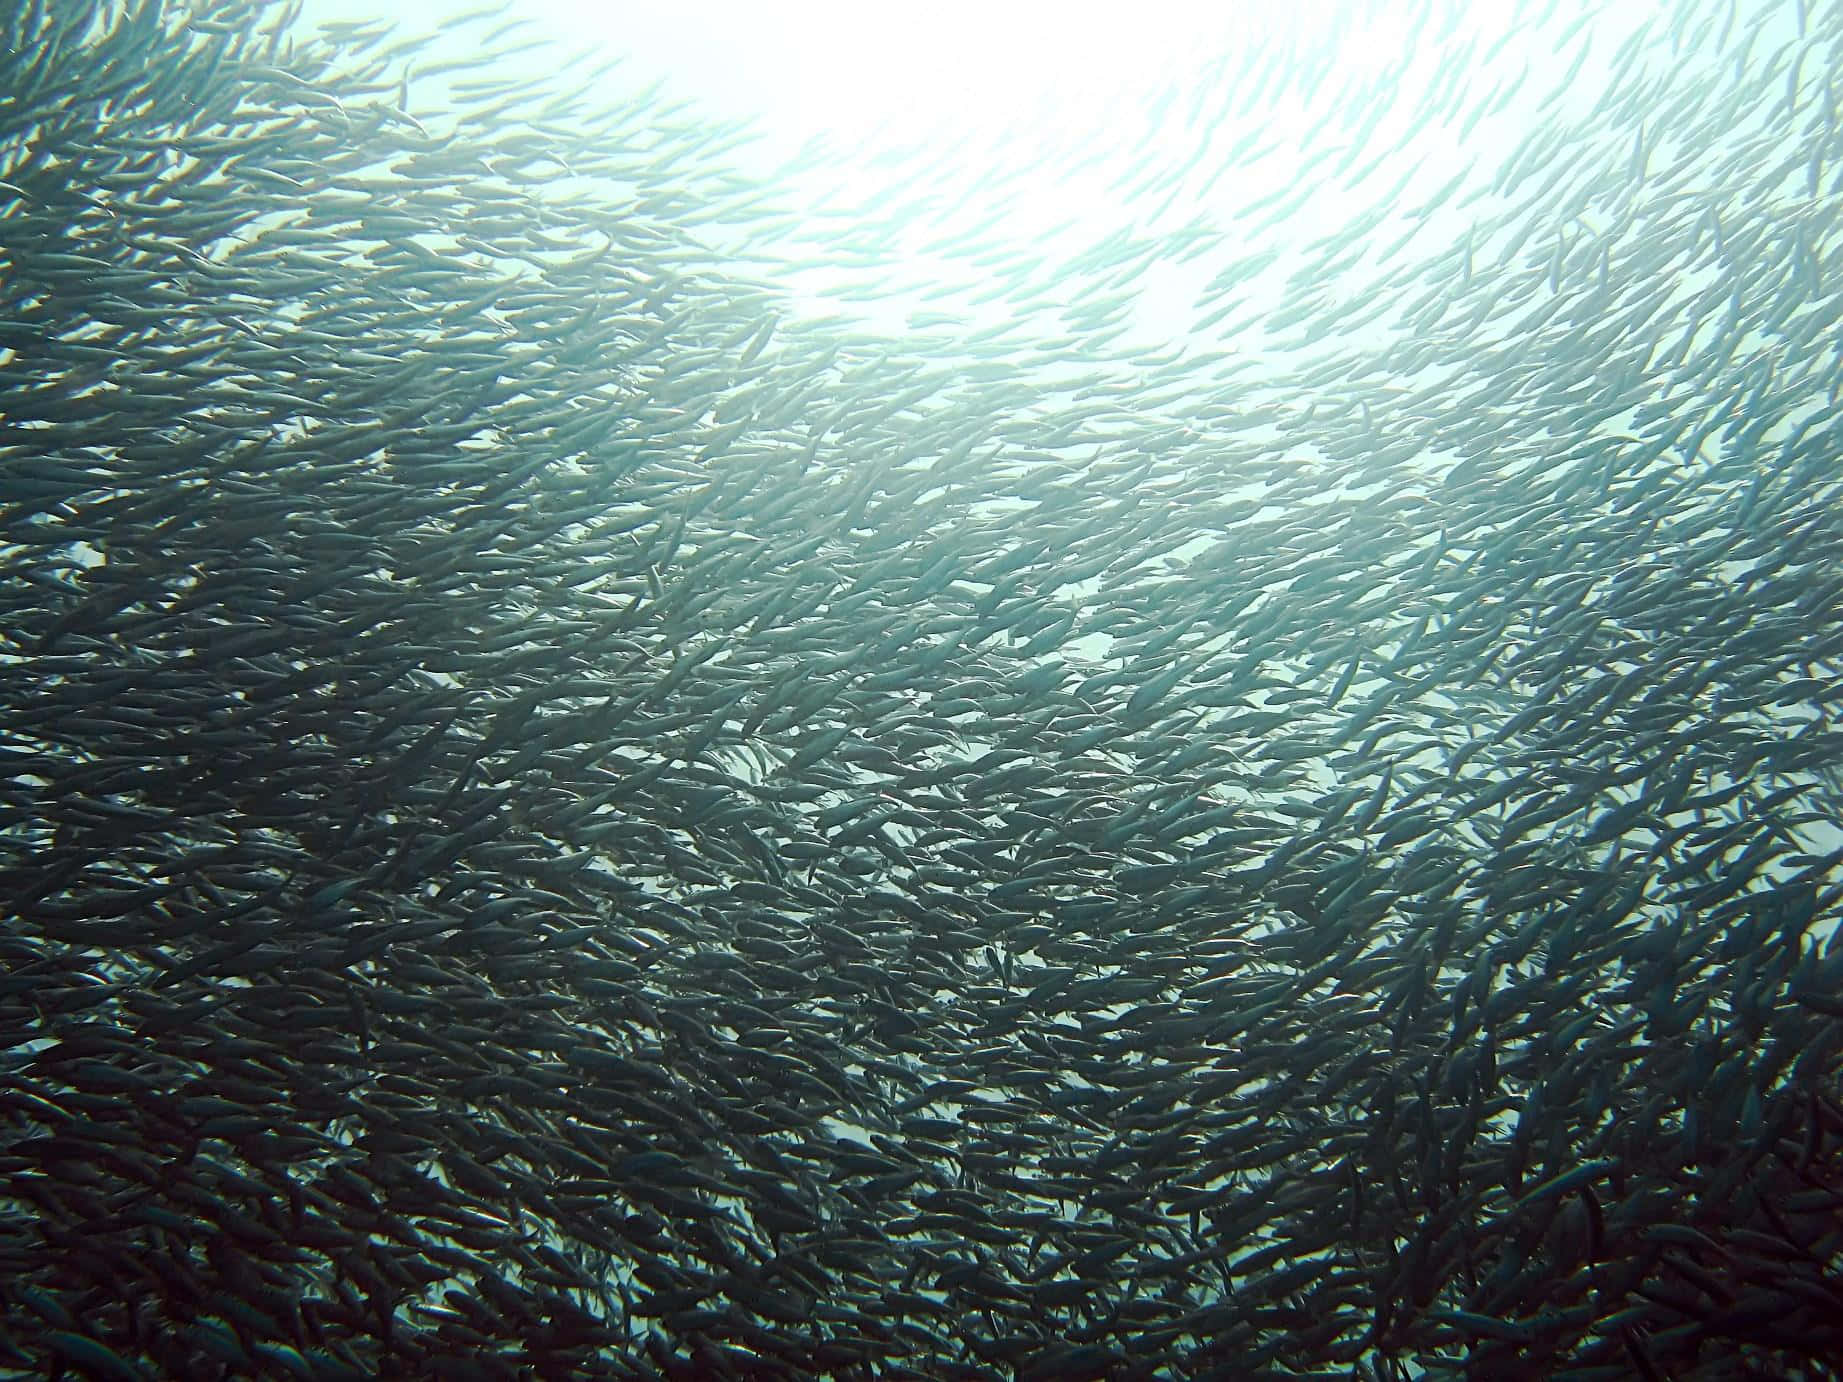 Sardine School Underwater Swarm Wallpaper